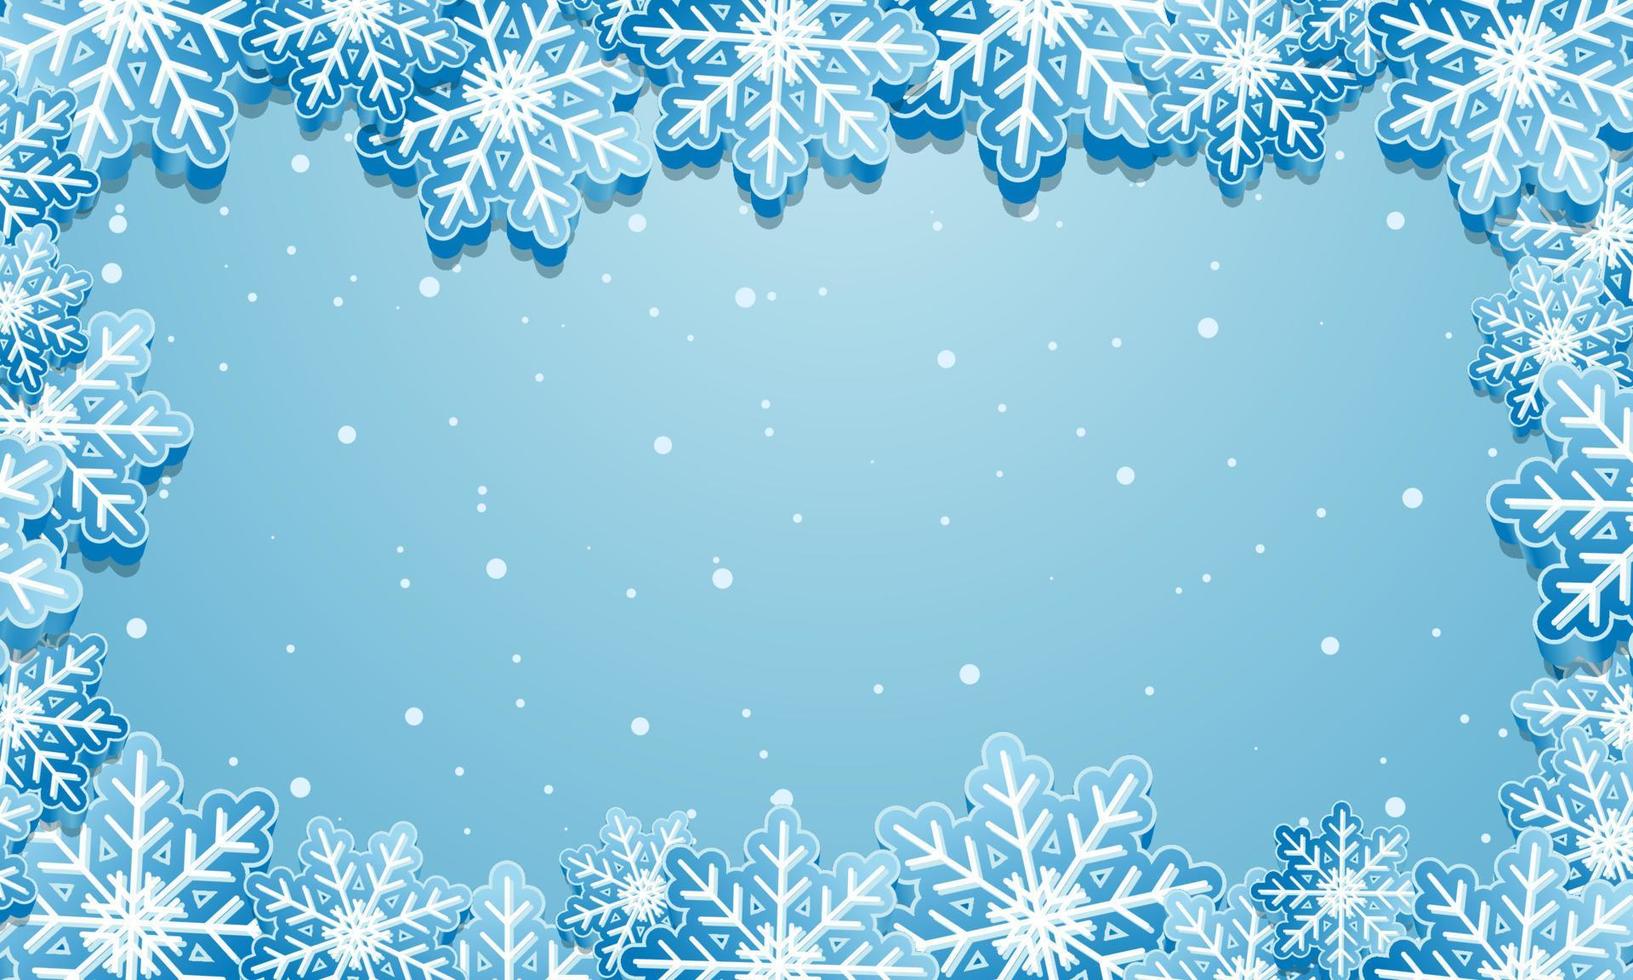 fundo de inverno com flocos de neve. bandeira azul de inverno com flocos de neve. ilustração vetorial vetor